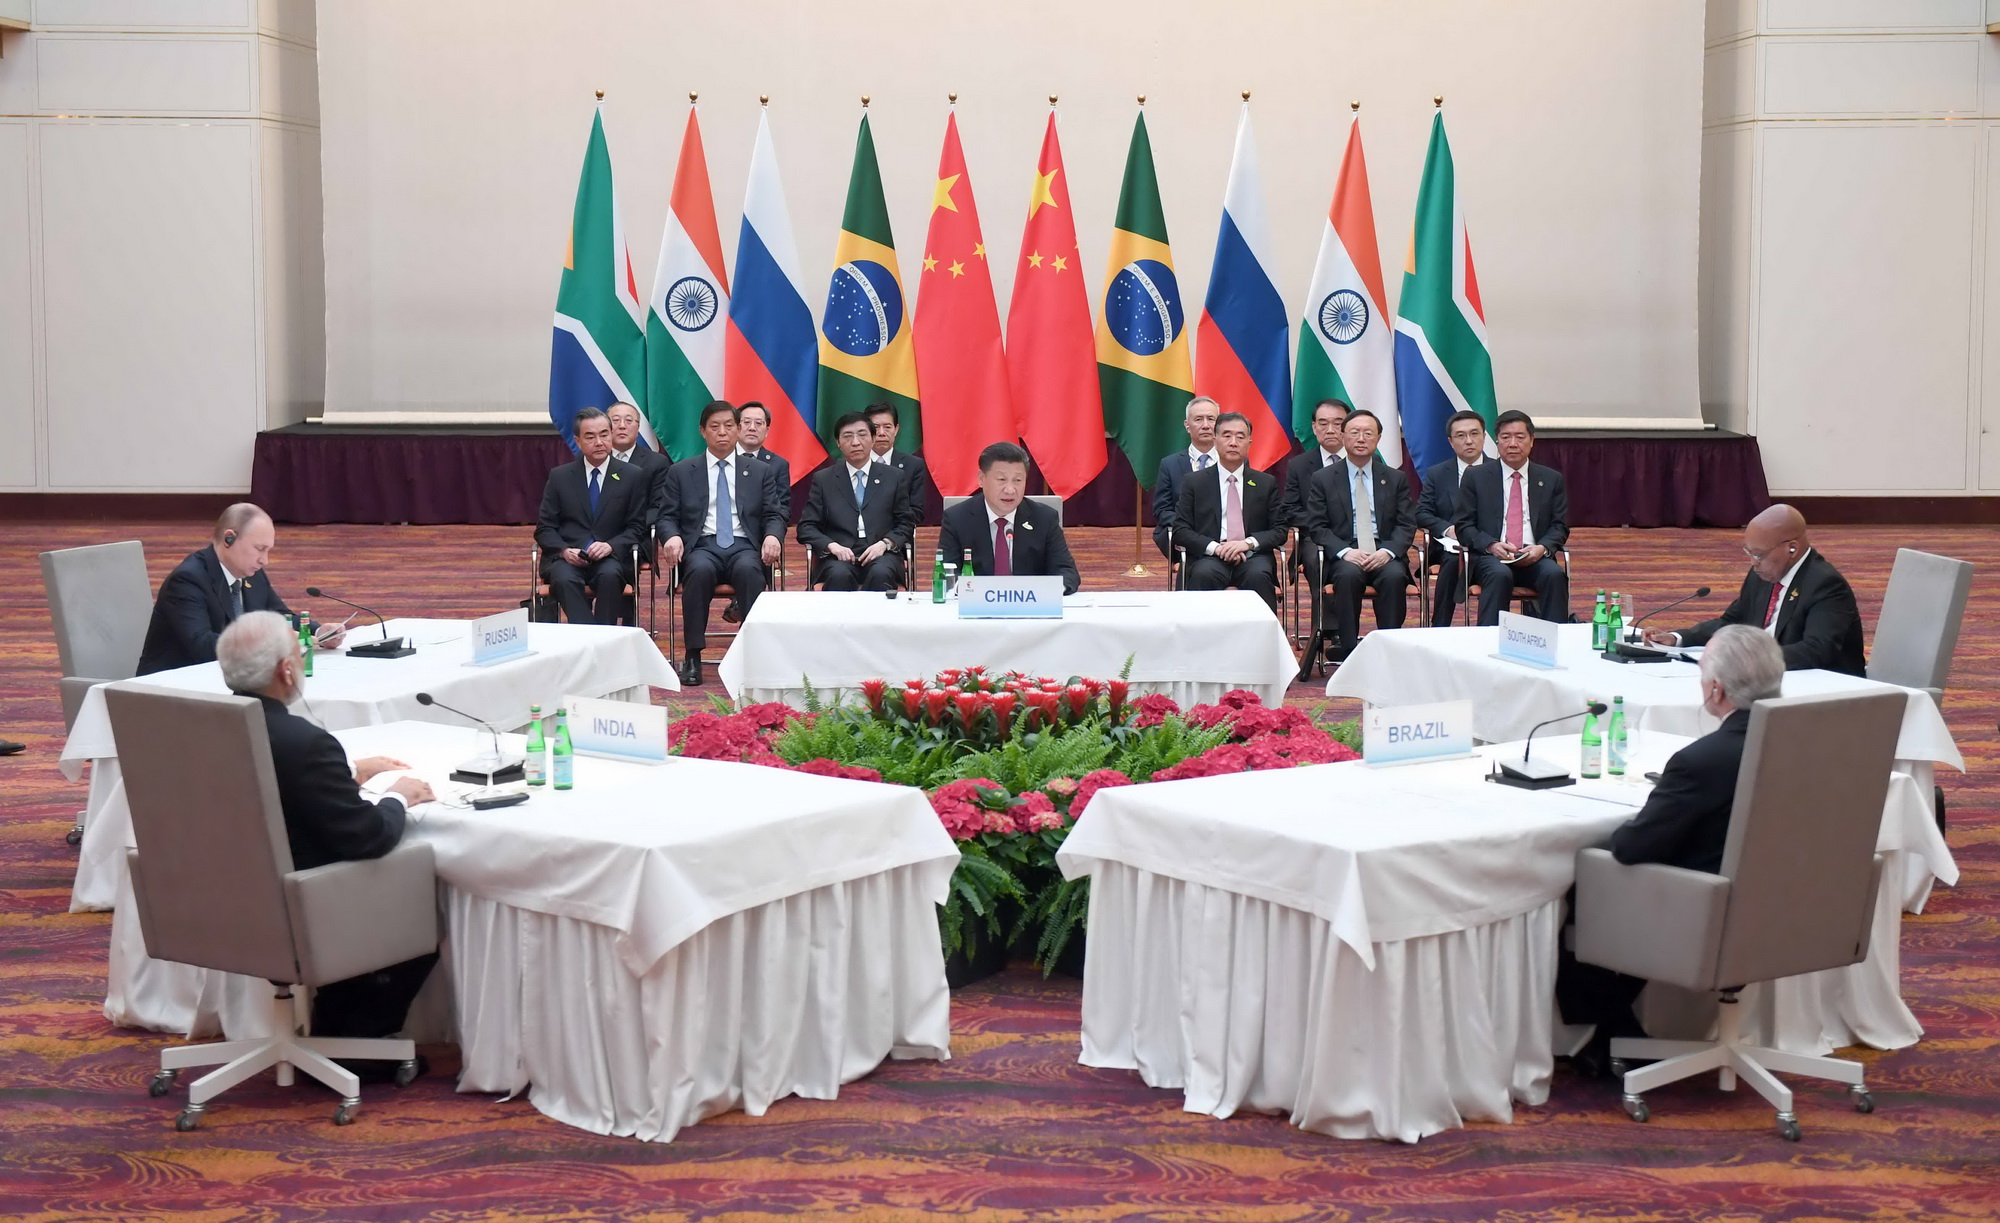 Từ trái sang, theo chiều kim đồng hồ: Thủ tướng Ấn Độ Narendra Modi, Tổng thống Nga Vladimir Putin, Chủ tịch Trung Quốc Tập Cận Bình, Tổng thống Nam Phi Jacob Zuma và Tổng thống Brazil Michel Temer tại Hội nghị không chính thức các nhà lãnh đạo nhóm BRICS tại Hamburg ngày 7/7. (Ảnh: THX/TTXVN)